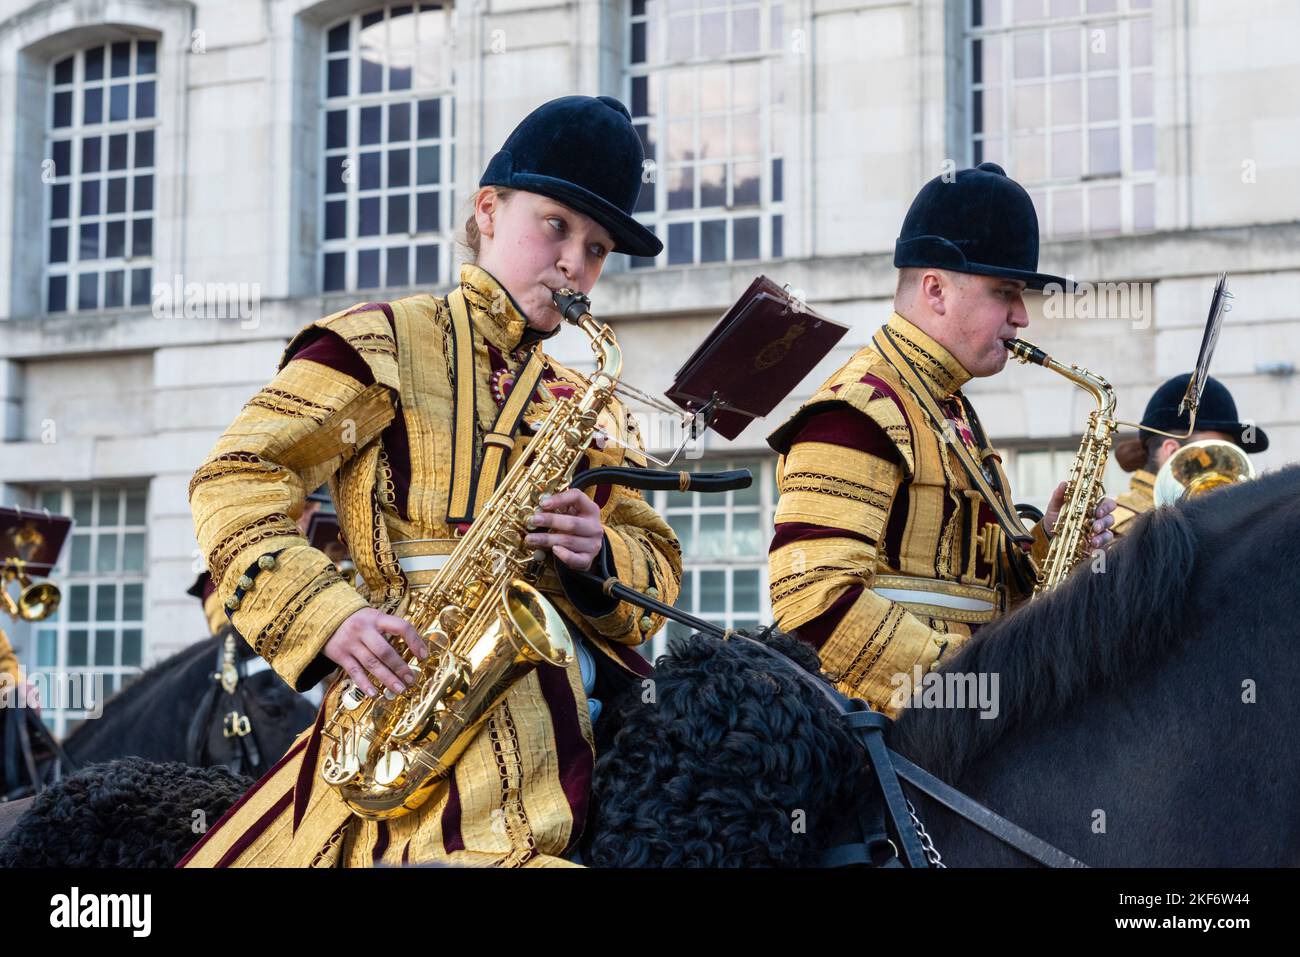 Die Band der Household Cavalry bei der Lord Mayor's Show Parade in der City of London, Großbritannien. Saxophonistin auf dem Pferderücken Stockfoto